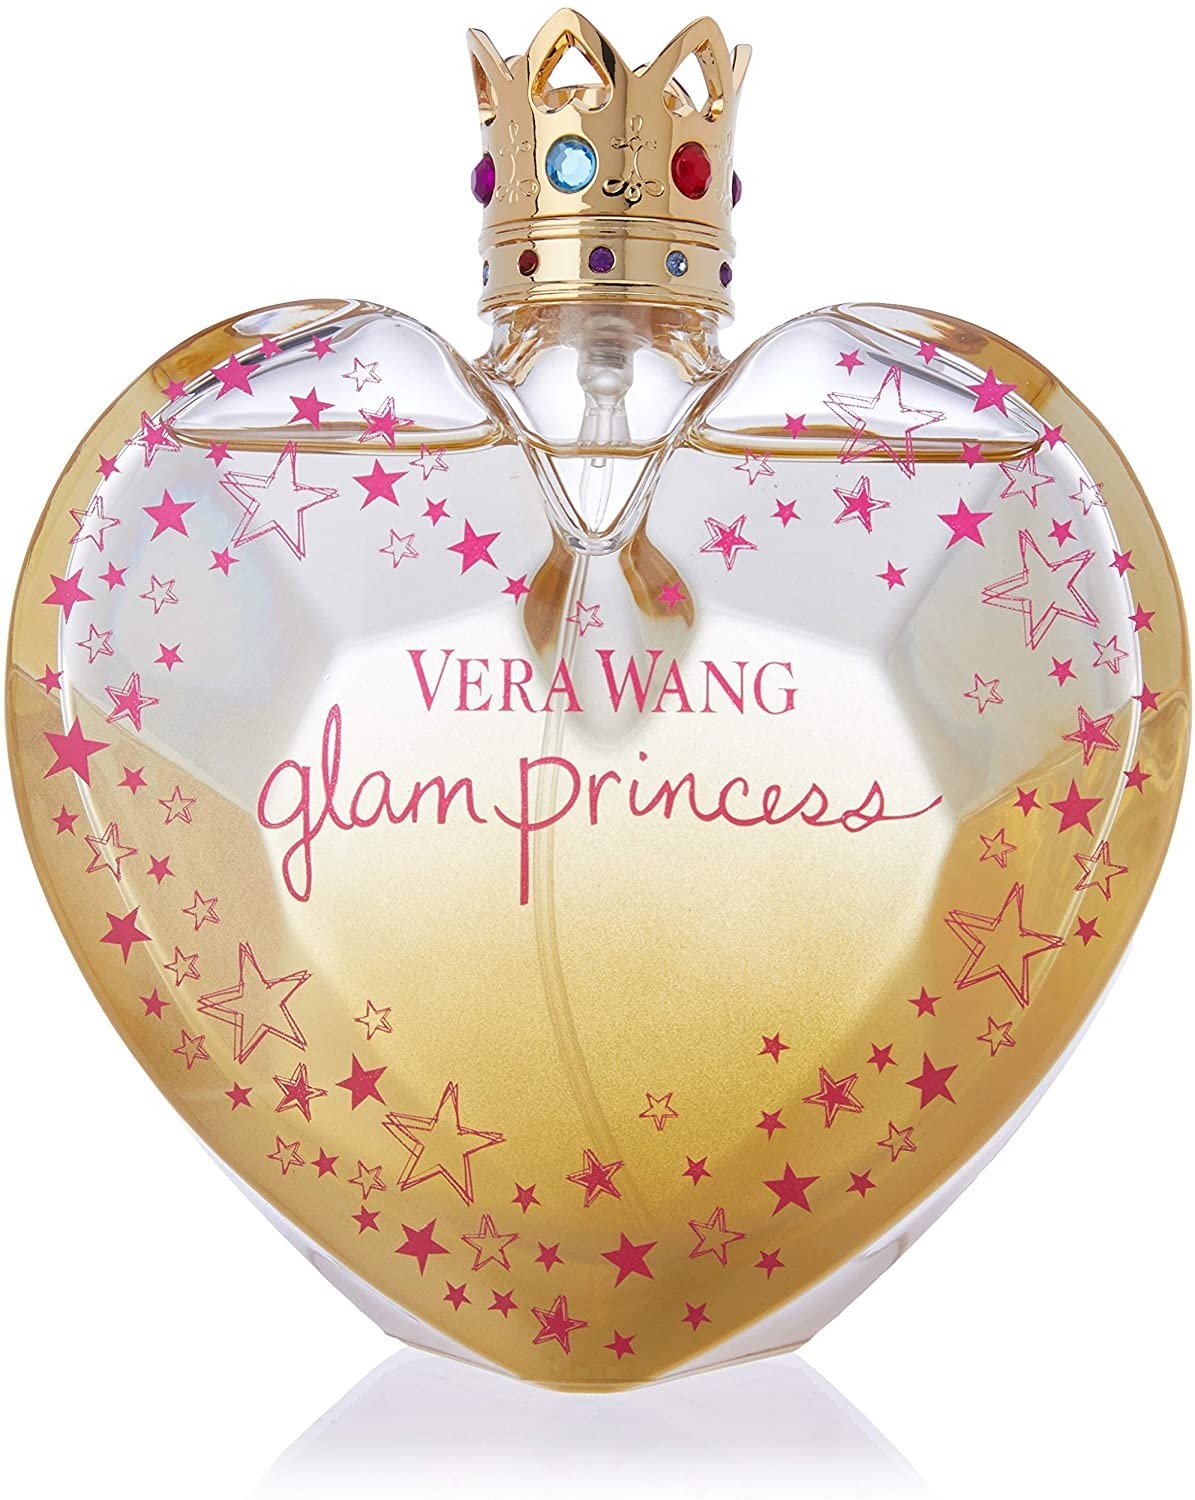  Glam Princess Eau de Toilette for Women - 100 ml